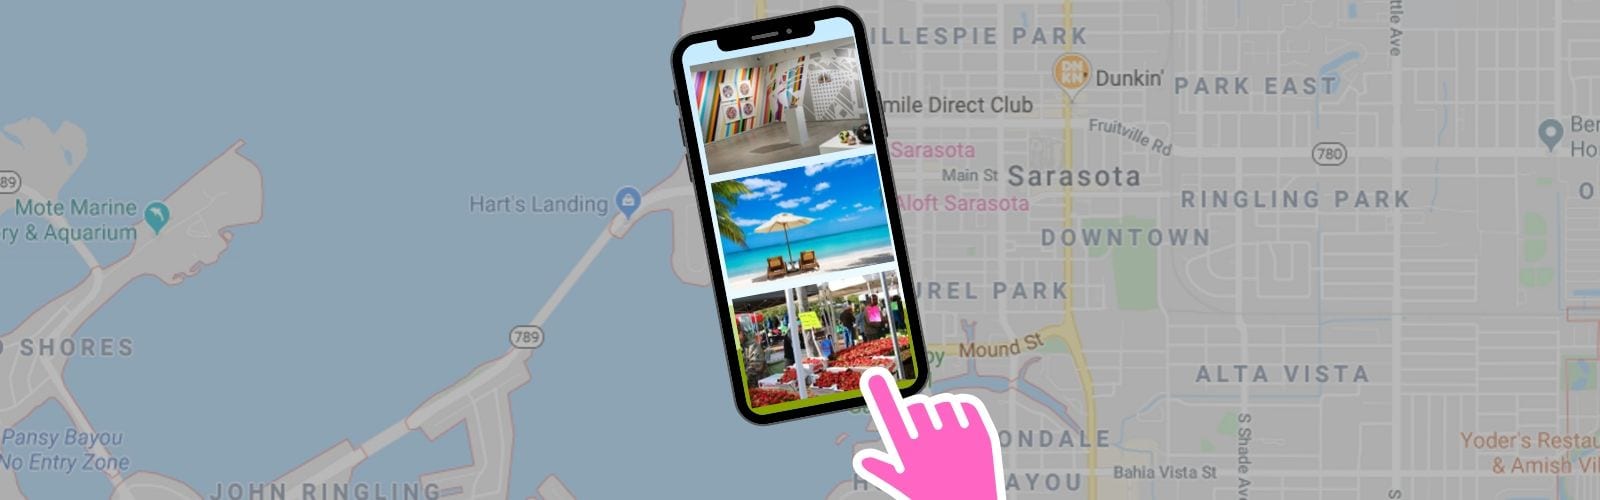 iphone over the Sarasota map, looking at places near BLVD Sarasota